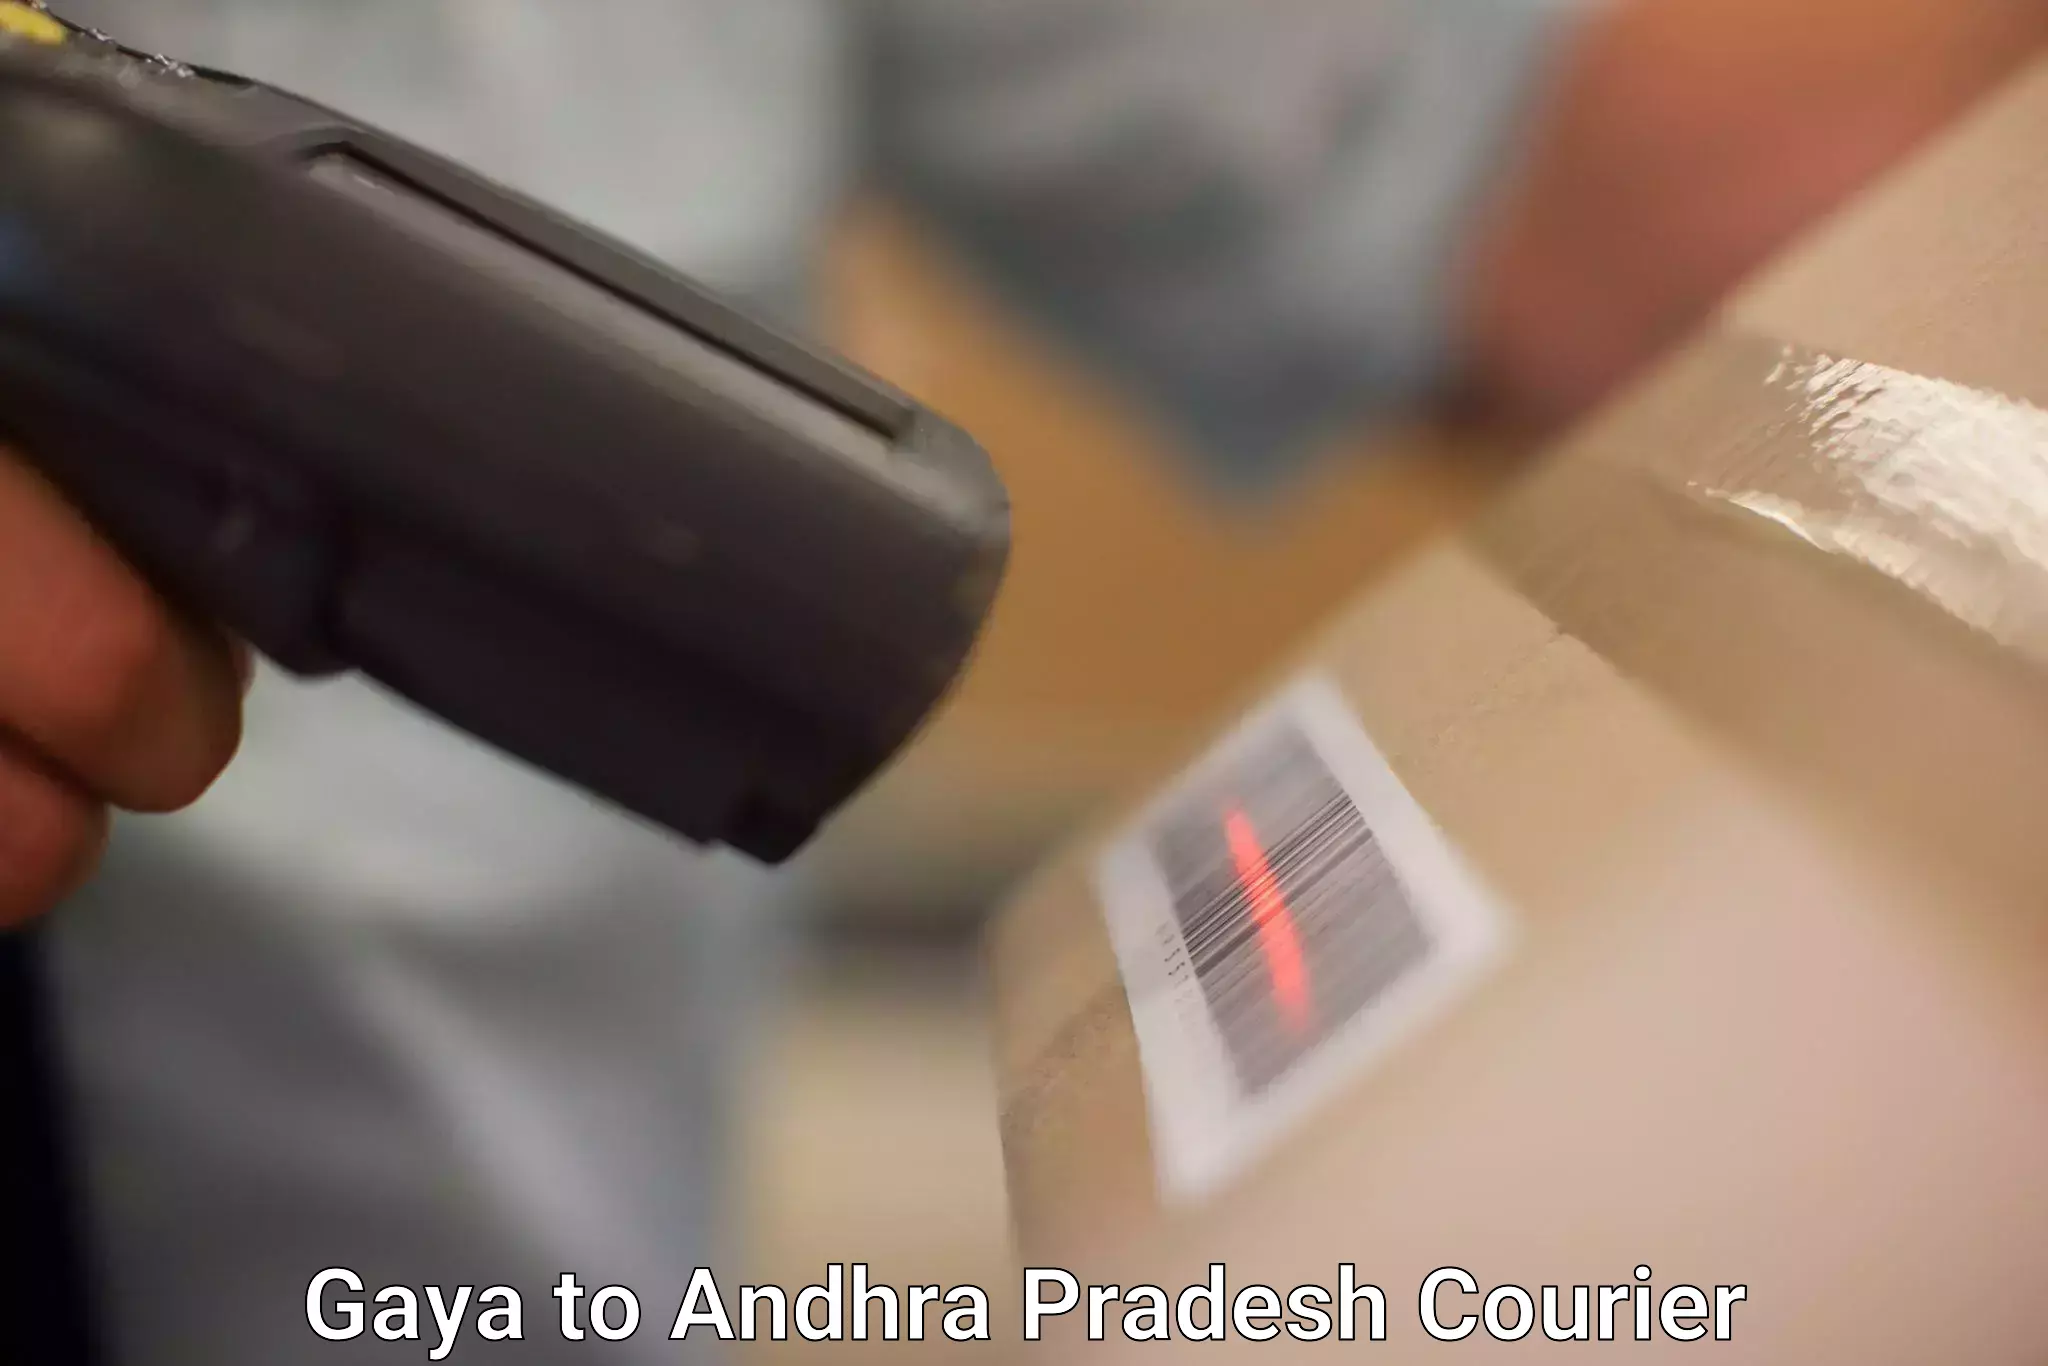 Reliable parcel services Gaya to Puttur Tirupati